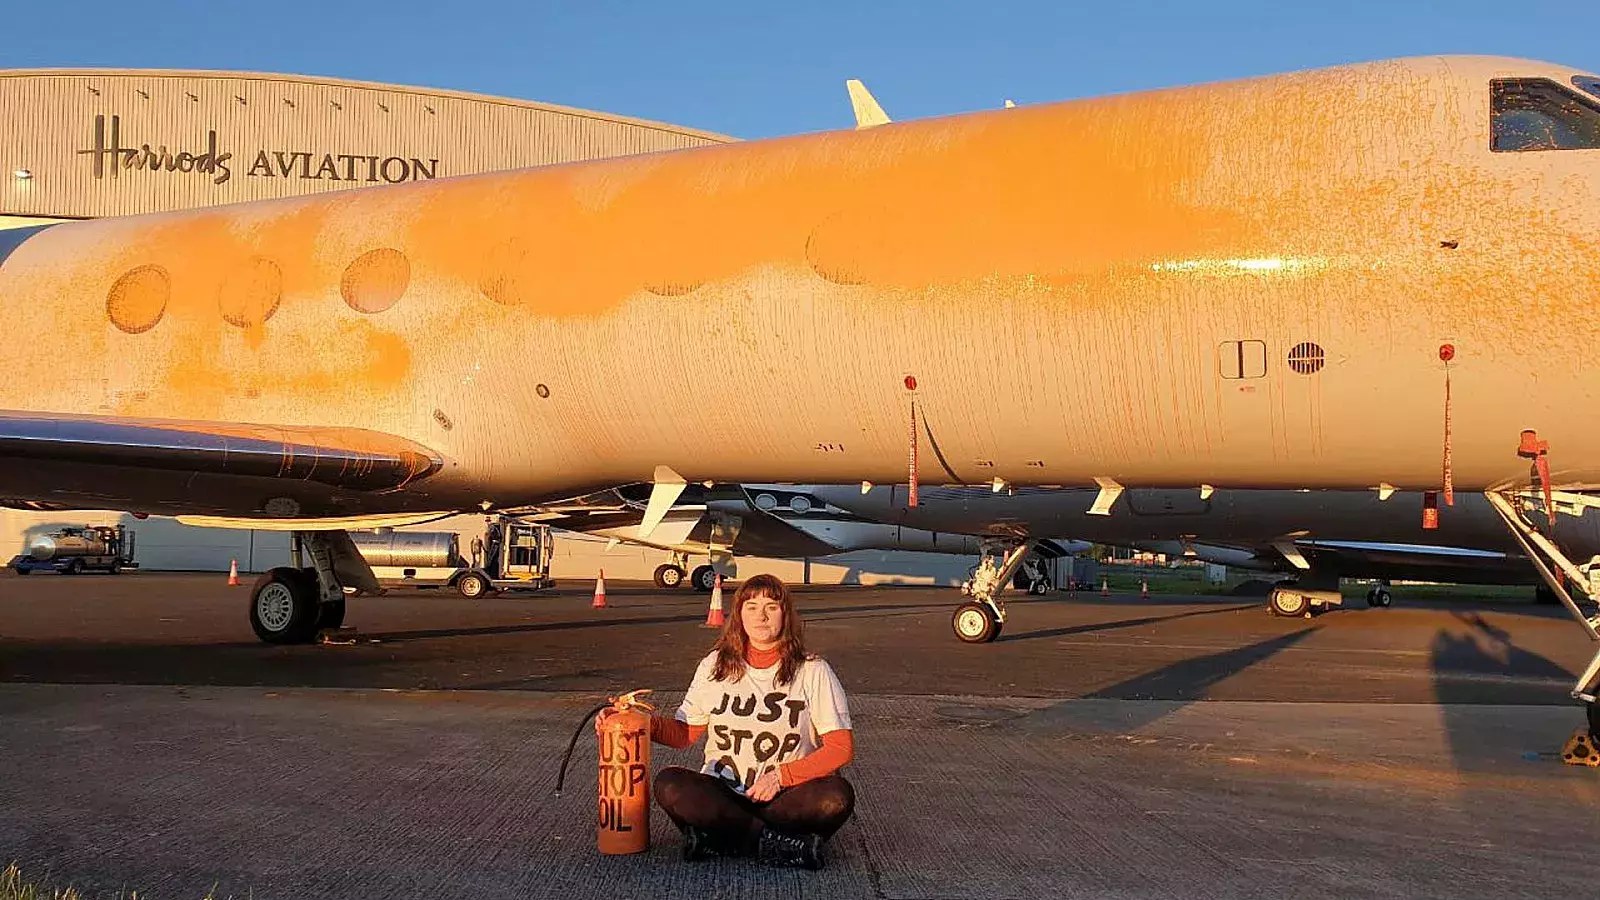 Activistas climáticos pintan con aerosol aviones privados; pensaban que el avión de Taylor Swift estaba en el aeropuerto